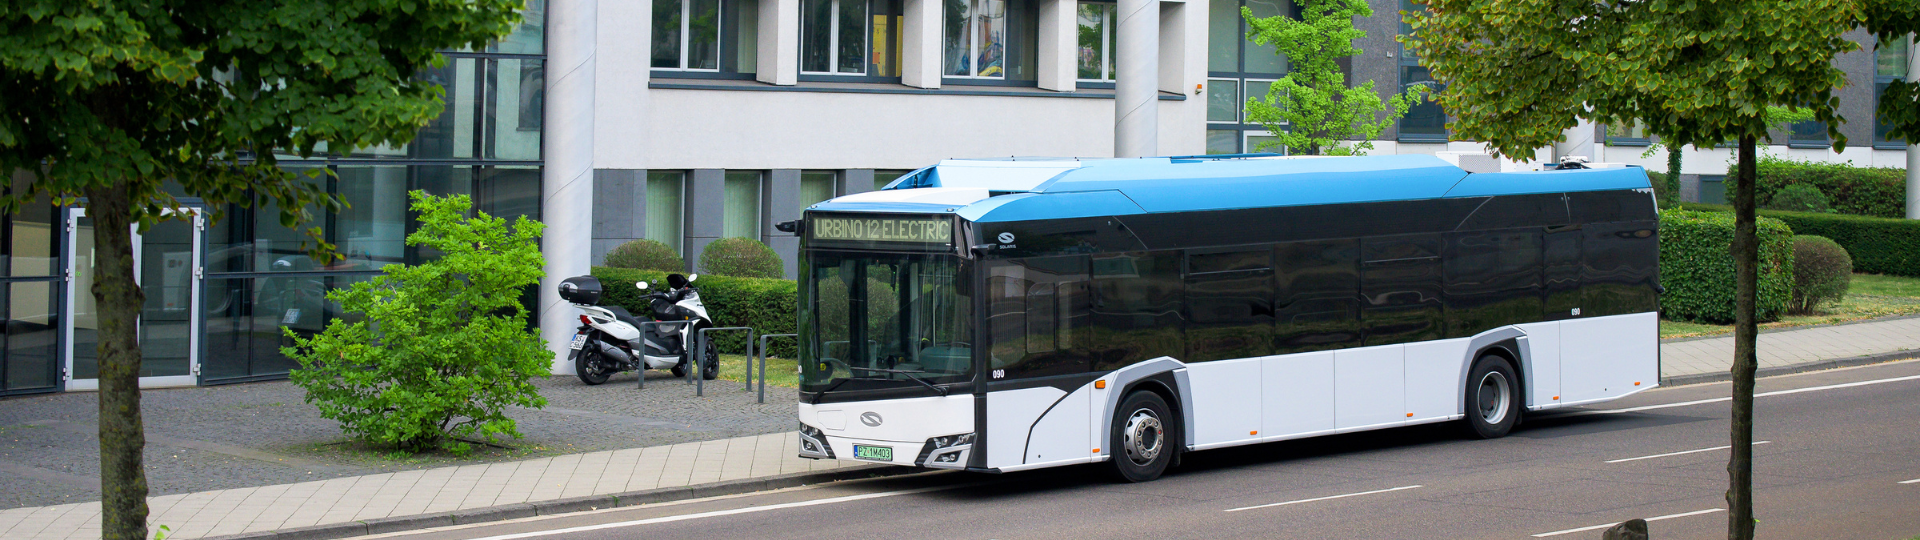 Flagowy autobus elektryczny Urbino 12 electric na testach w MPK Kraków